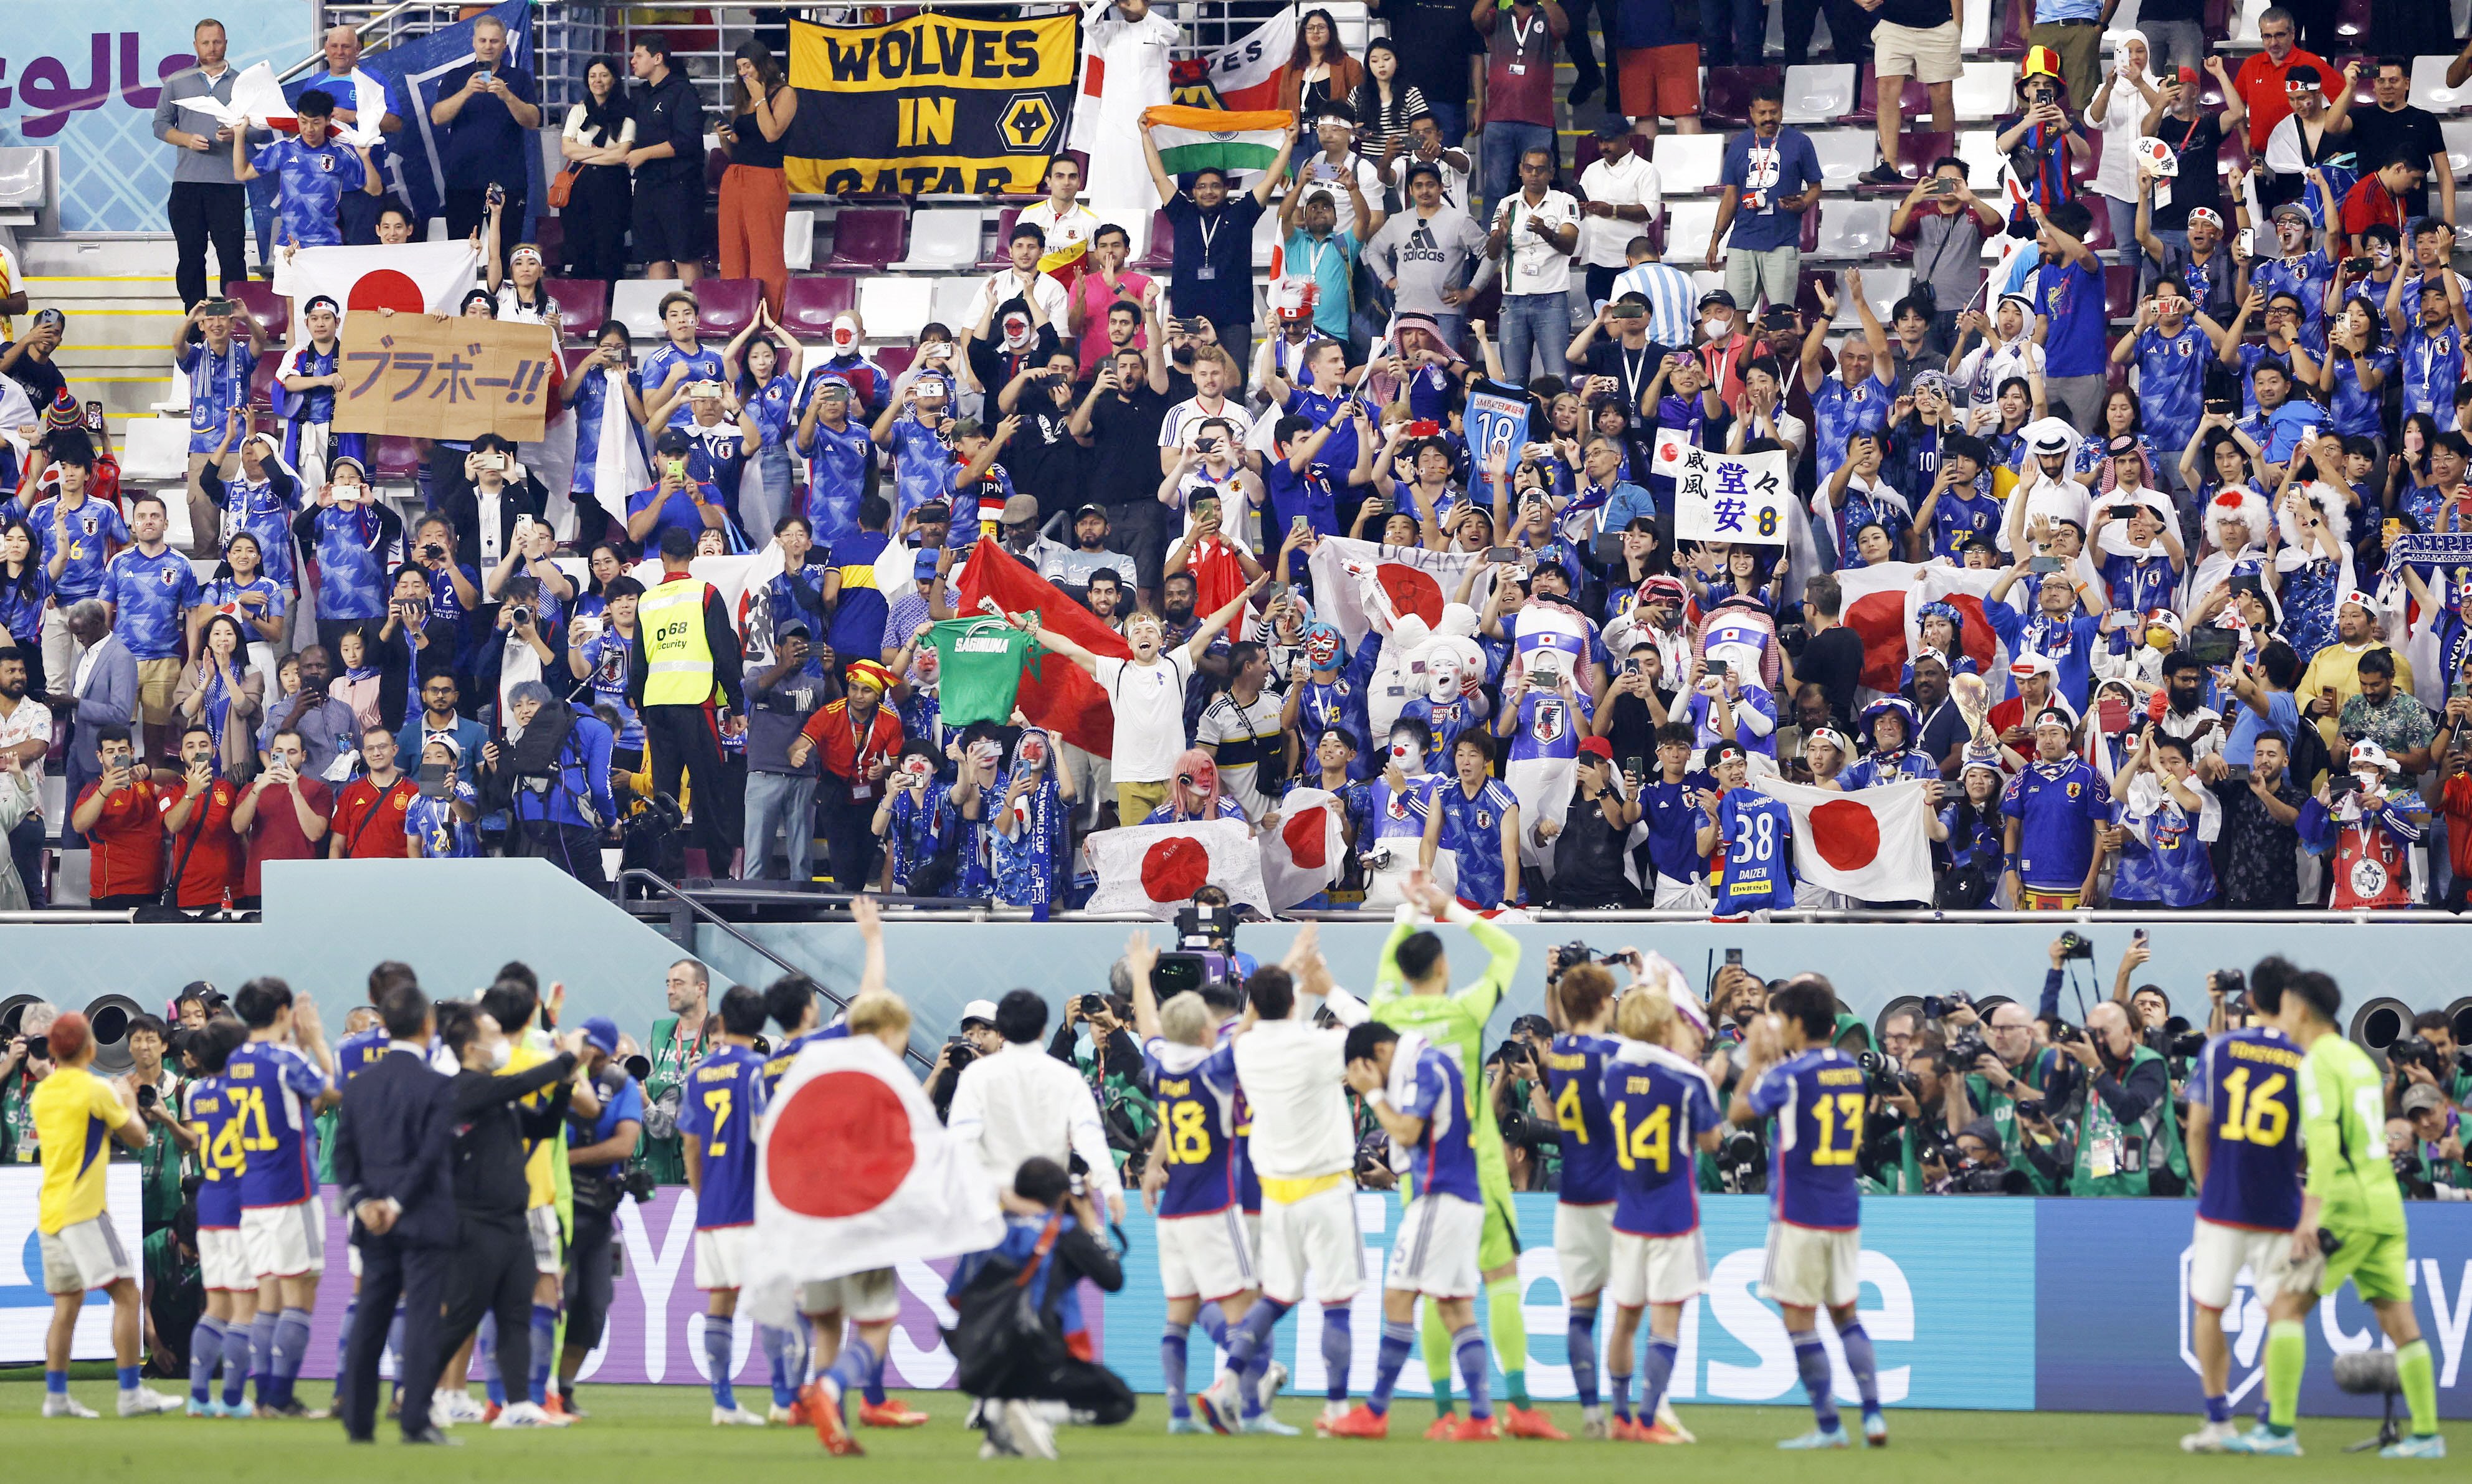 日本 ワールドカップに衝撃 欧米メディアも驚き 産経ニュース